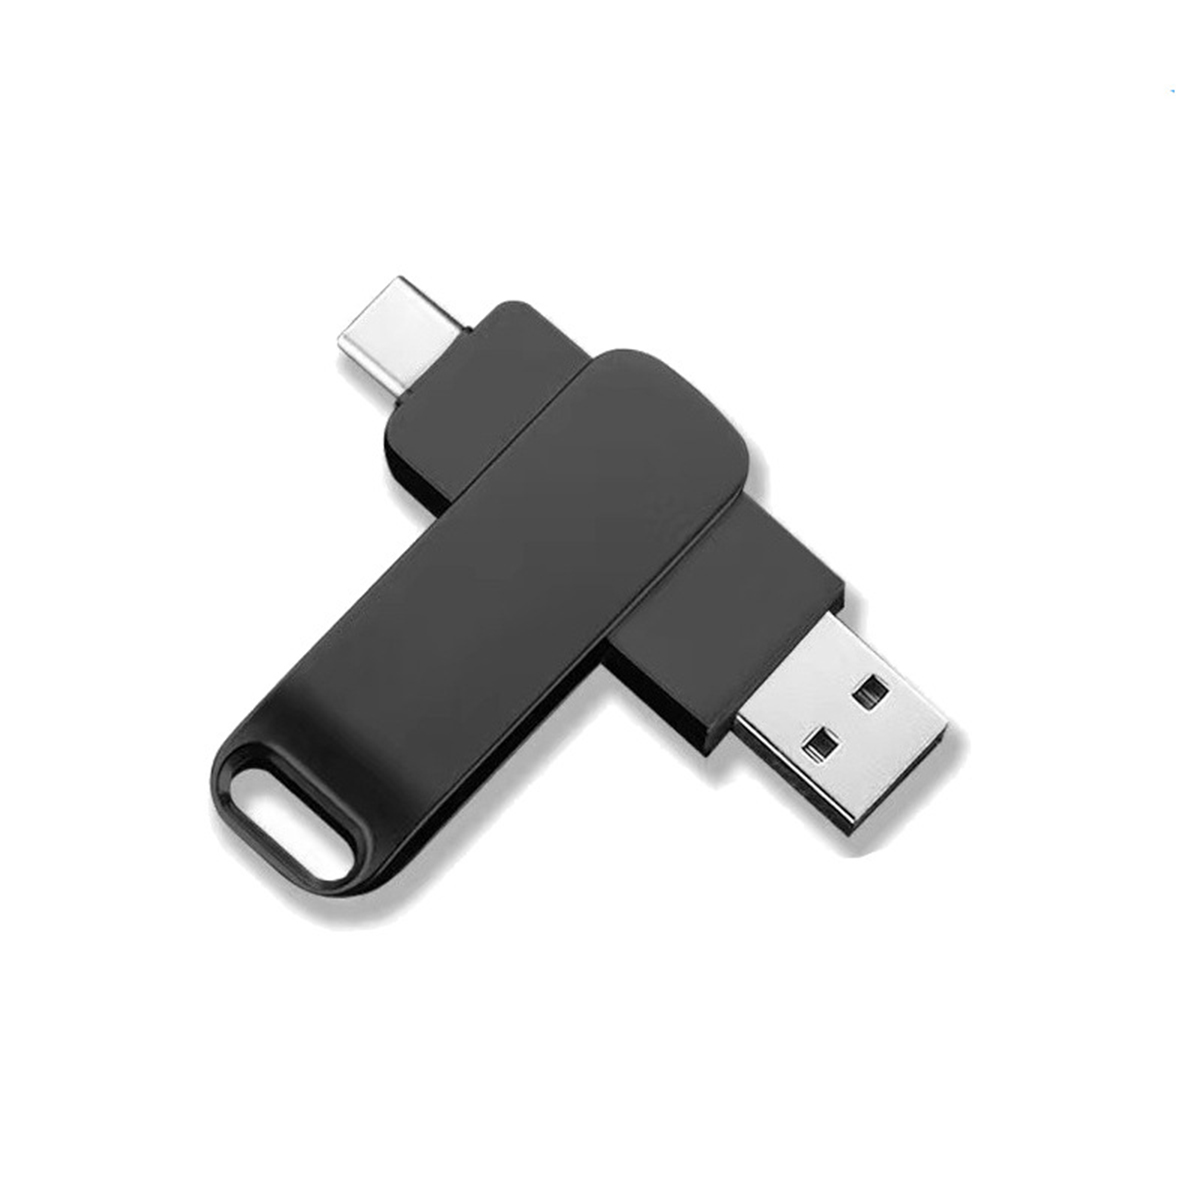 GB, Kapazität disk U USB-Flash-Laufwerk Car Flash hohe Compact Gbit/s 1 BYTELIKE doppelten u-drive Verwendung, 128 Flashlaufwerk, 3.0 zur 128g